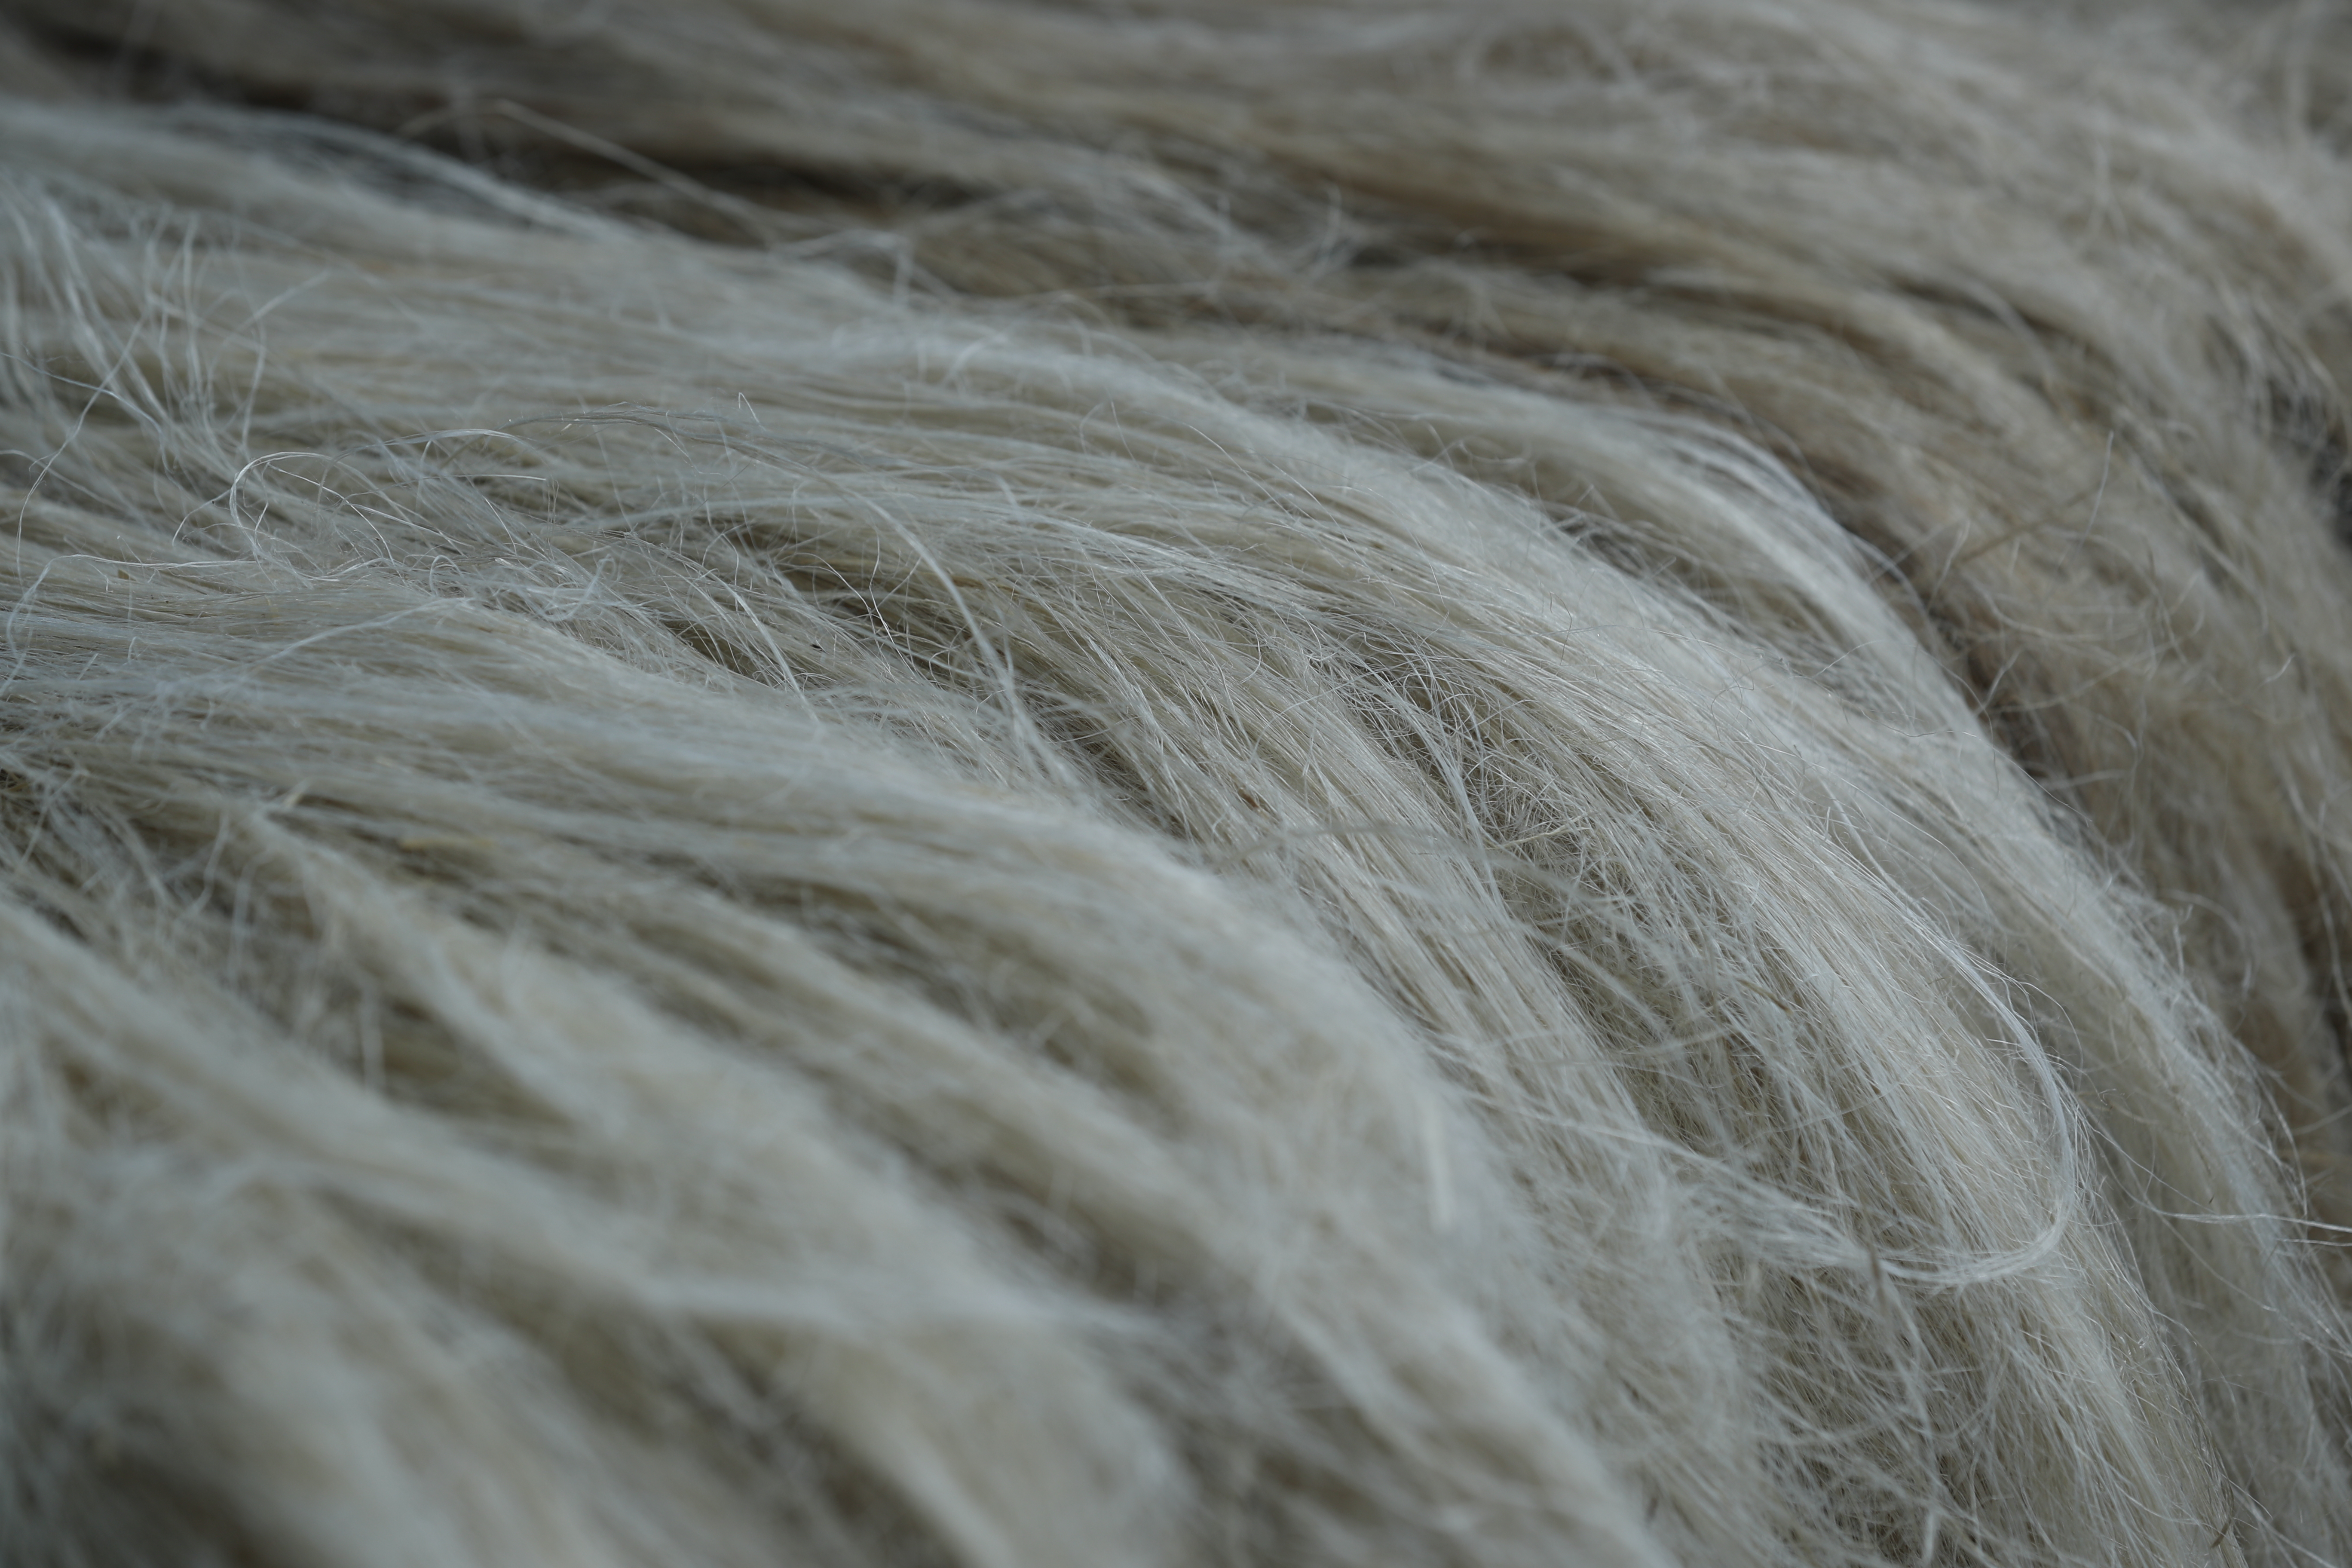 Сельхозкооператив Селенгинского района Республики Бурятия будет перерабатывать шерсть и изготавливать войлок по уникальной технологии